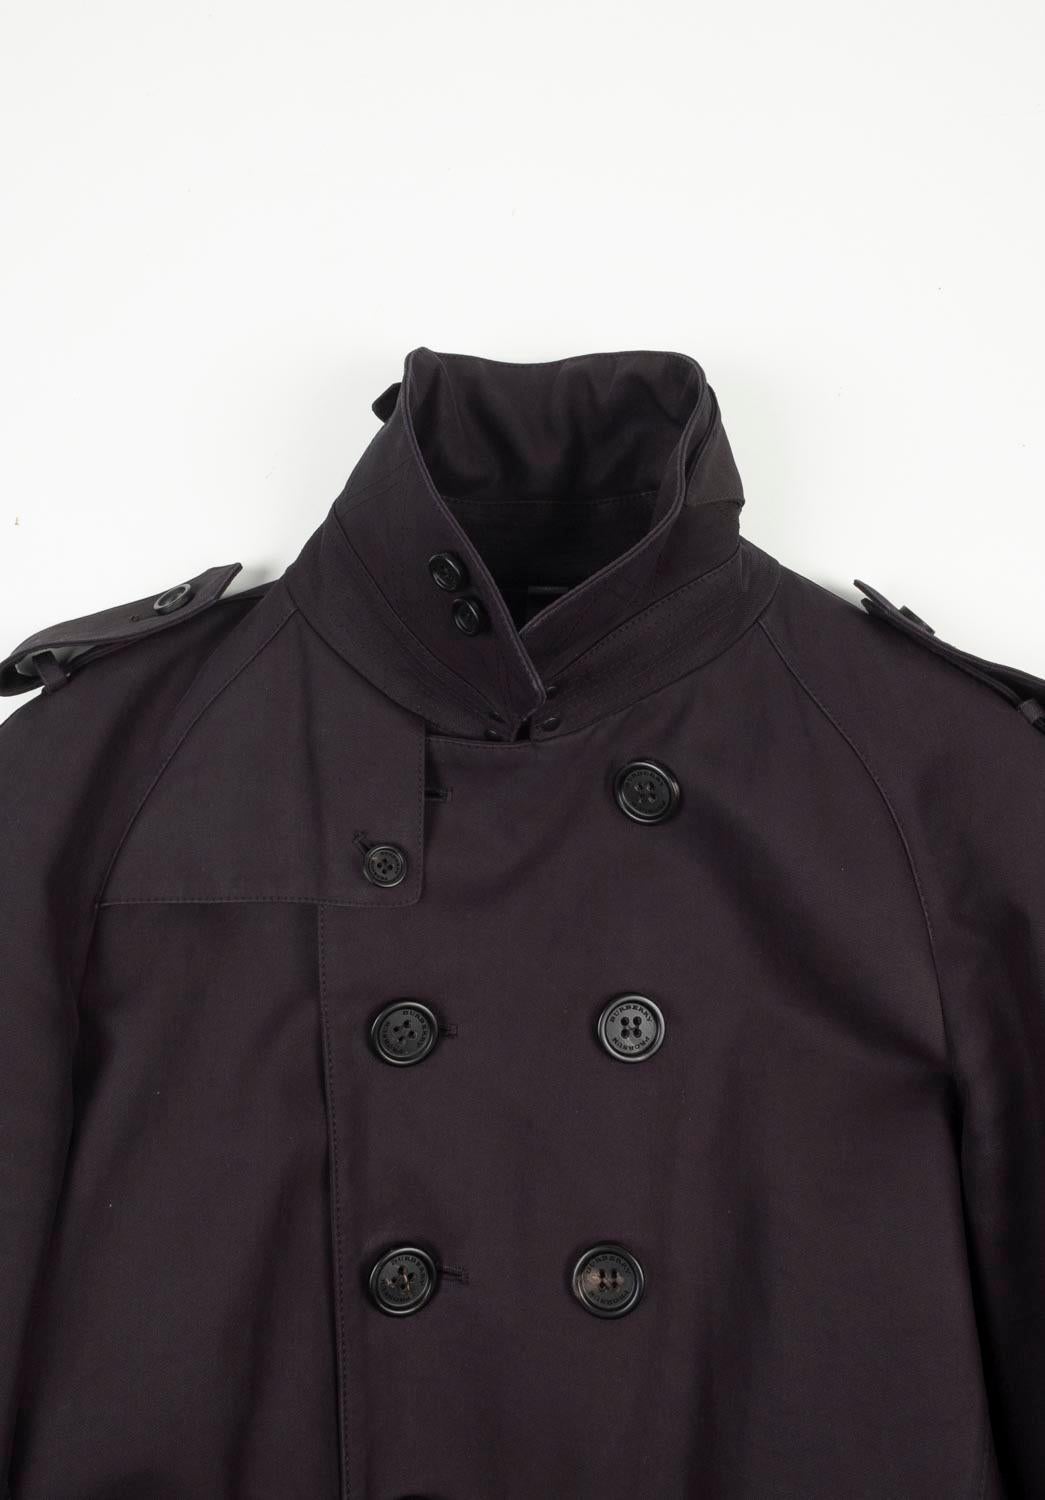 100% authentique Burberry Prorsum Runway Trench Coat, S604 
Couleur : noir
(La couleur réelle peut varier légèrement en raison de l'interprétation individuelle de l'écran de l'ordinateur).
Matériau : 100% coton
Taille de l'étiquette : ITA46 court